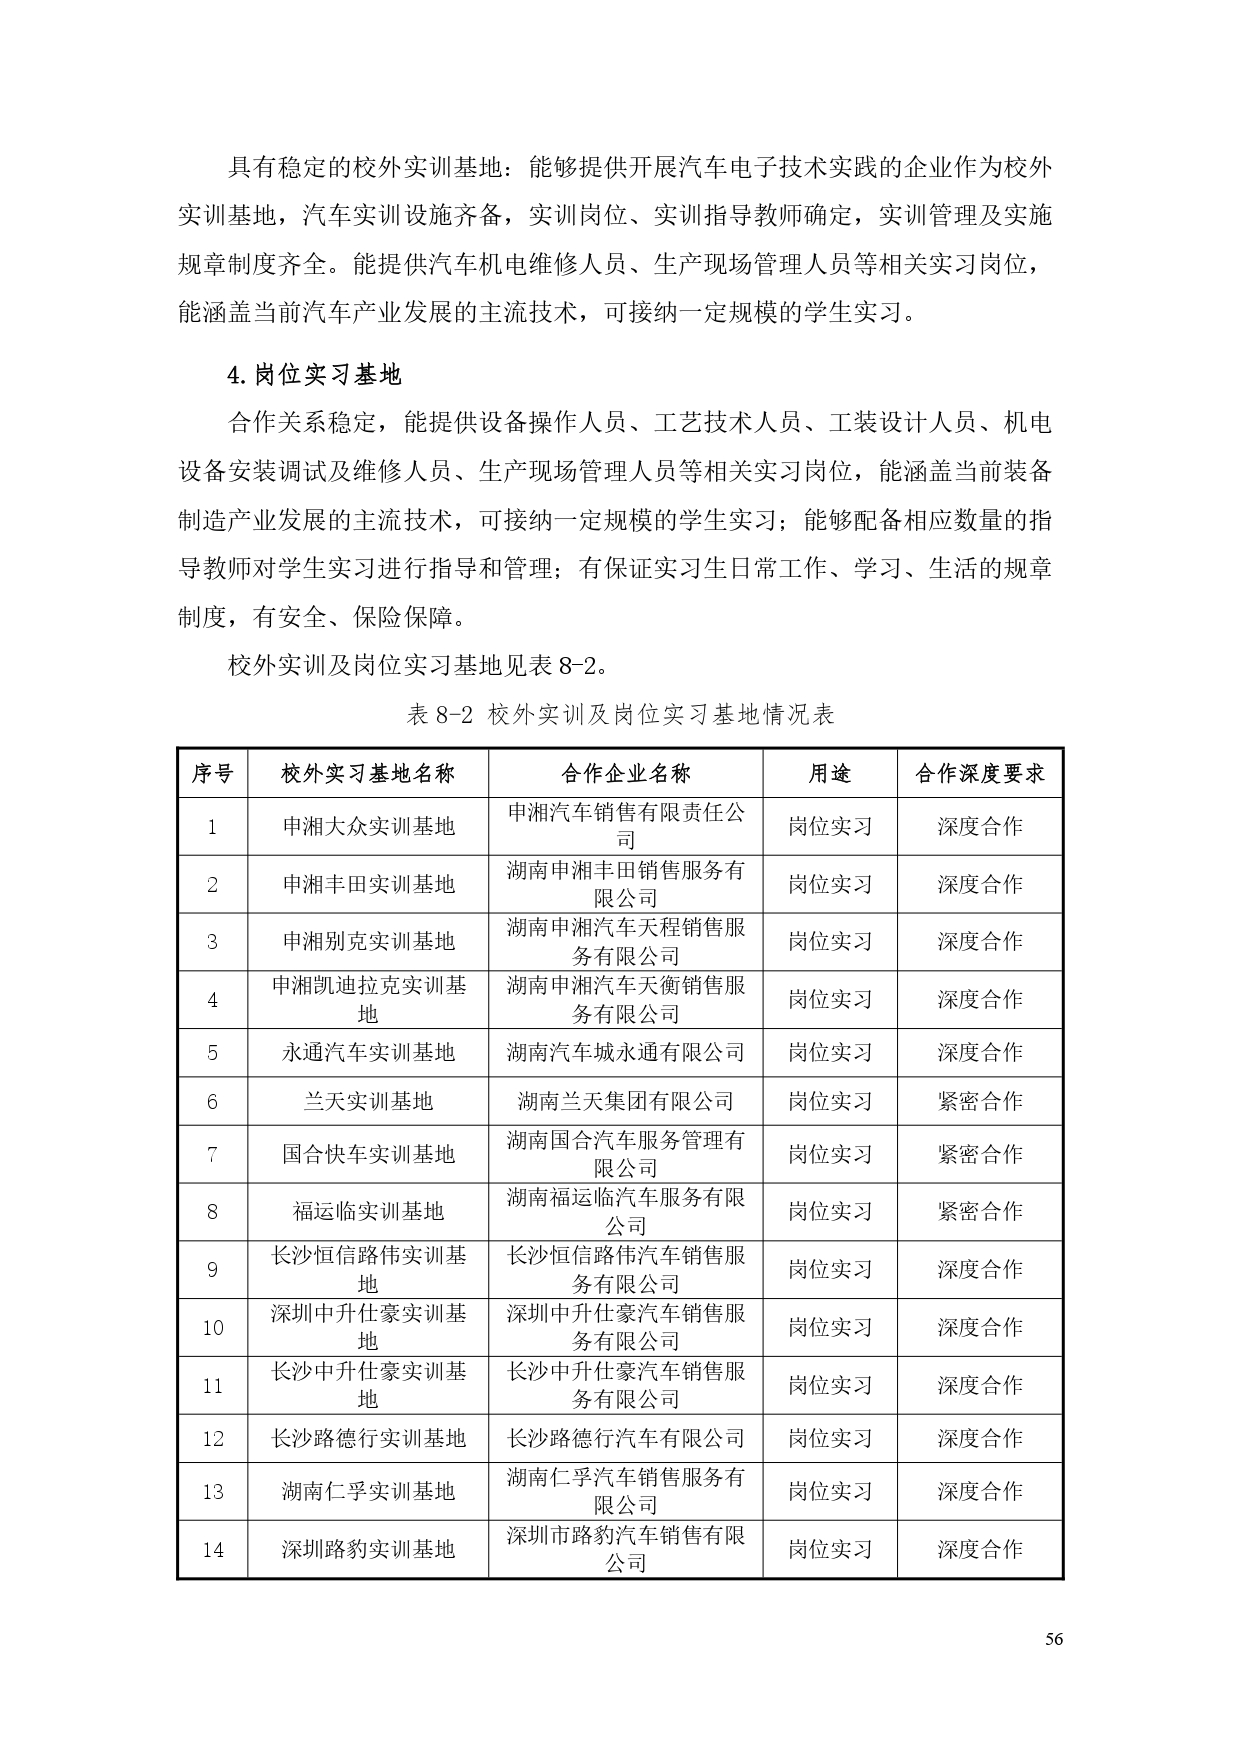 湖南机电职业技术学院2022版汽车电子技术专业人才培养方案V6_page-0058.jpg